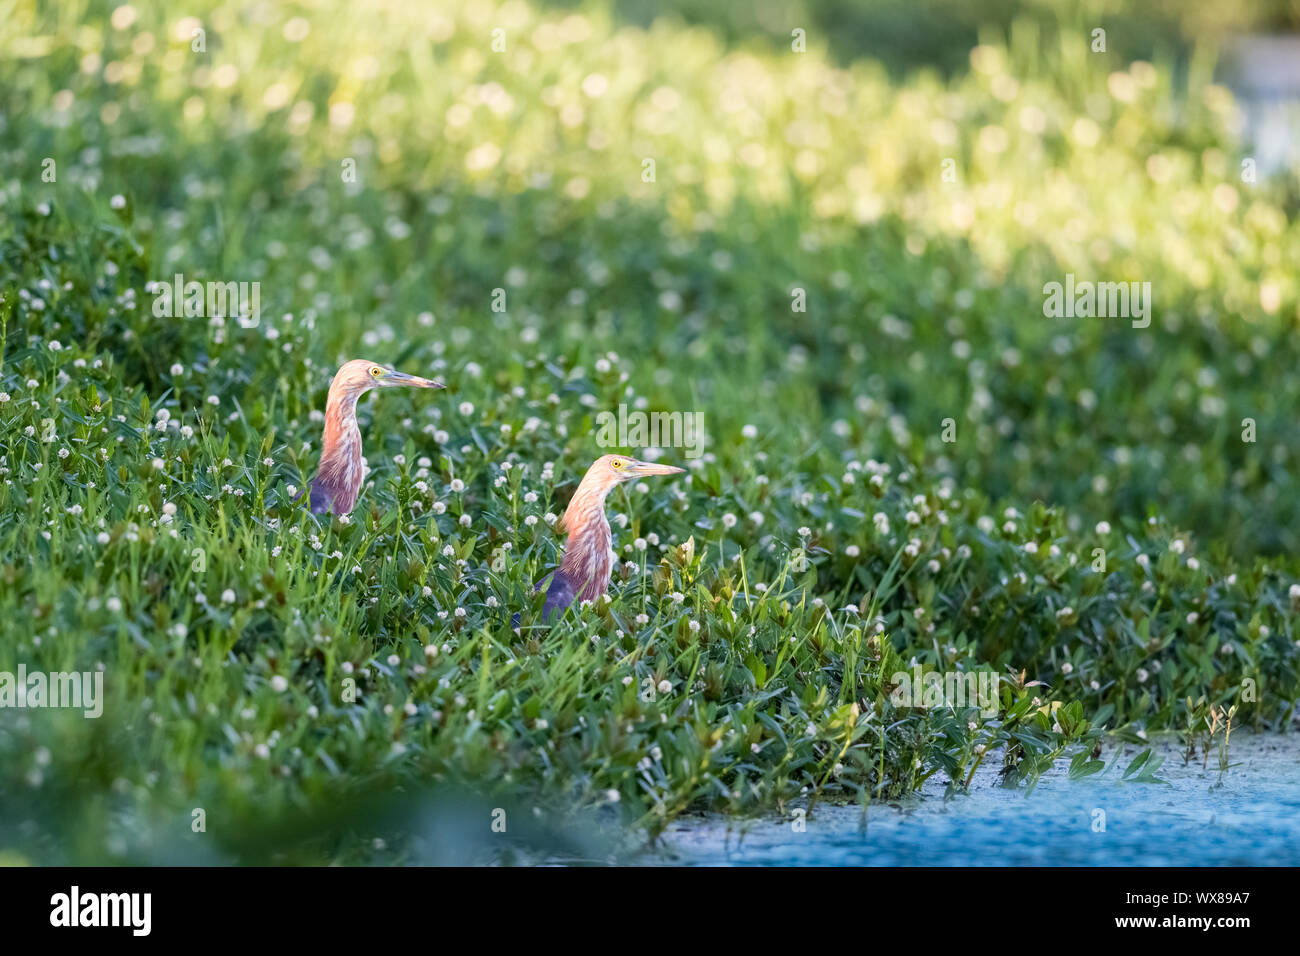 Chinesische Teich Heron im Gras Stockfoto